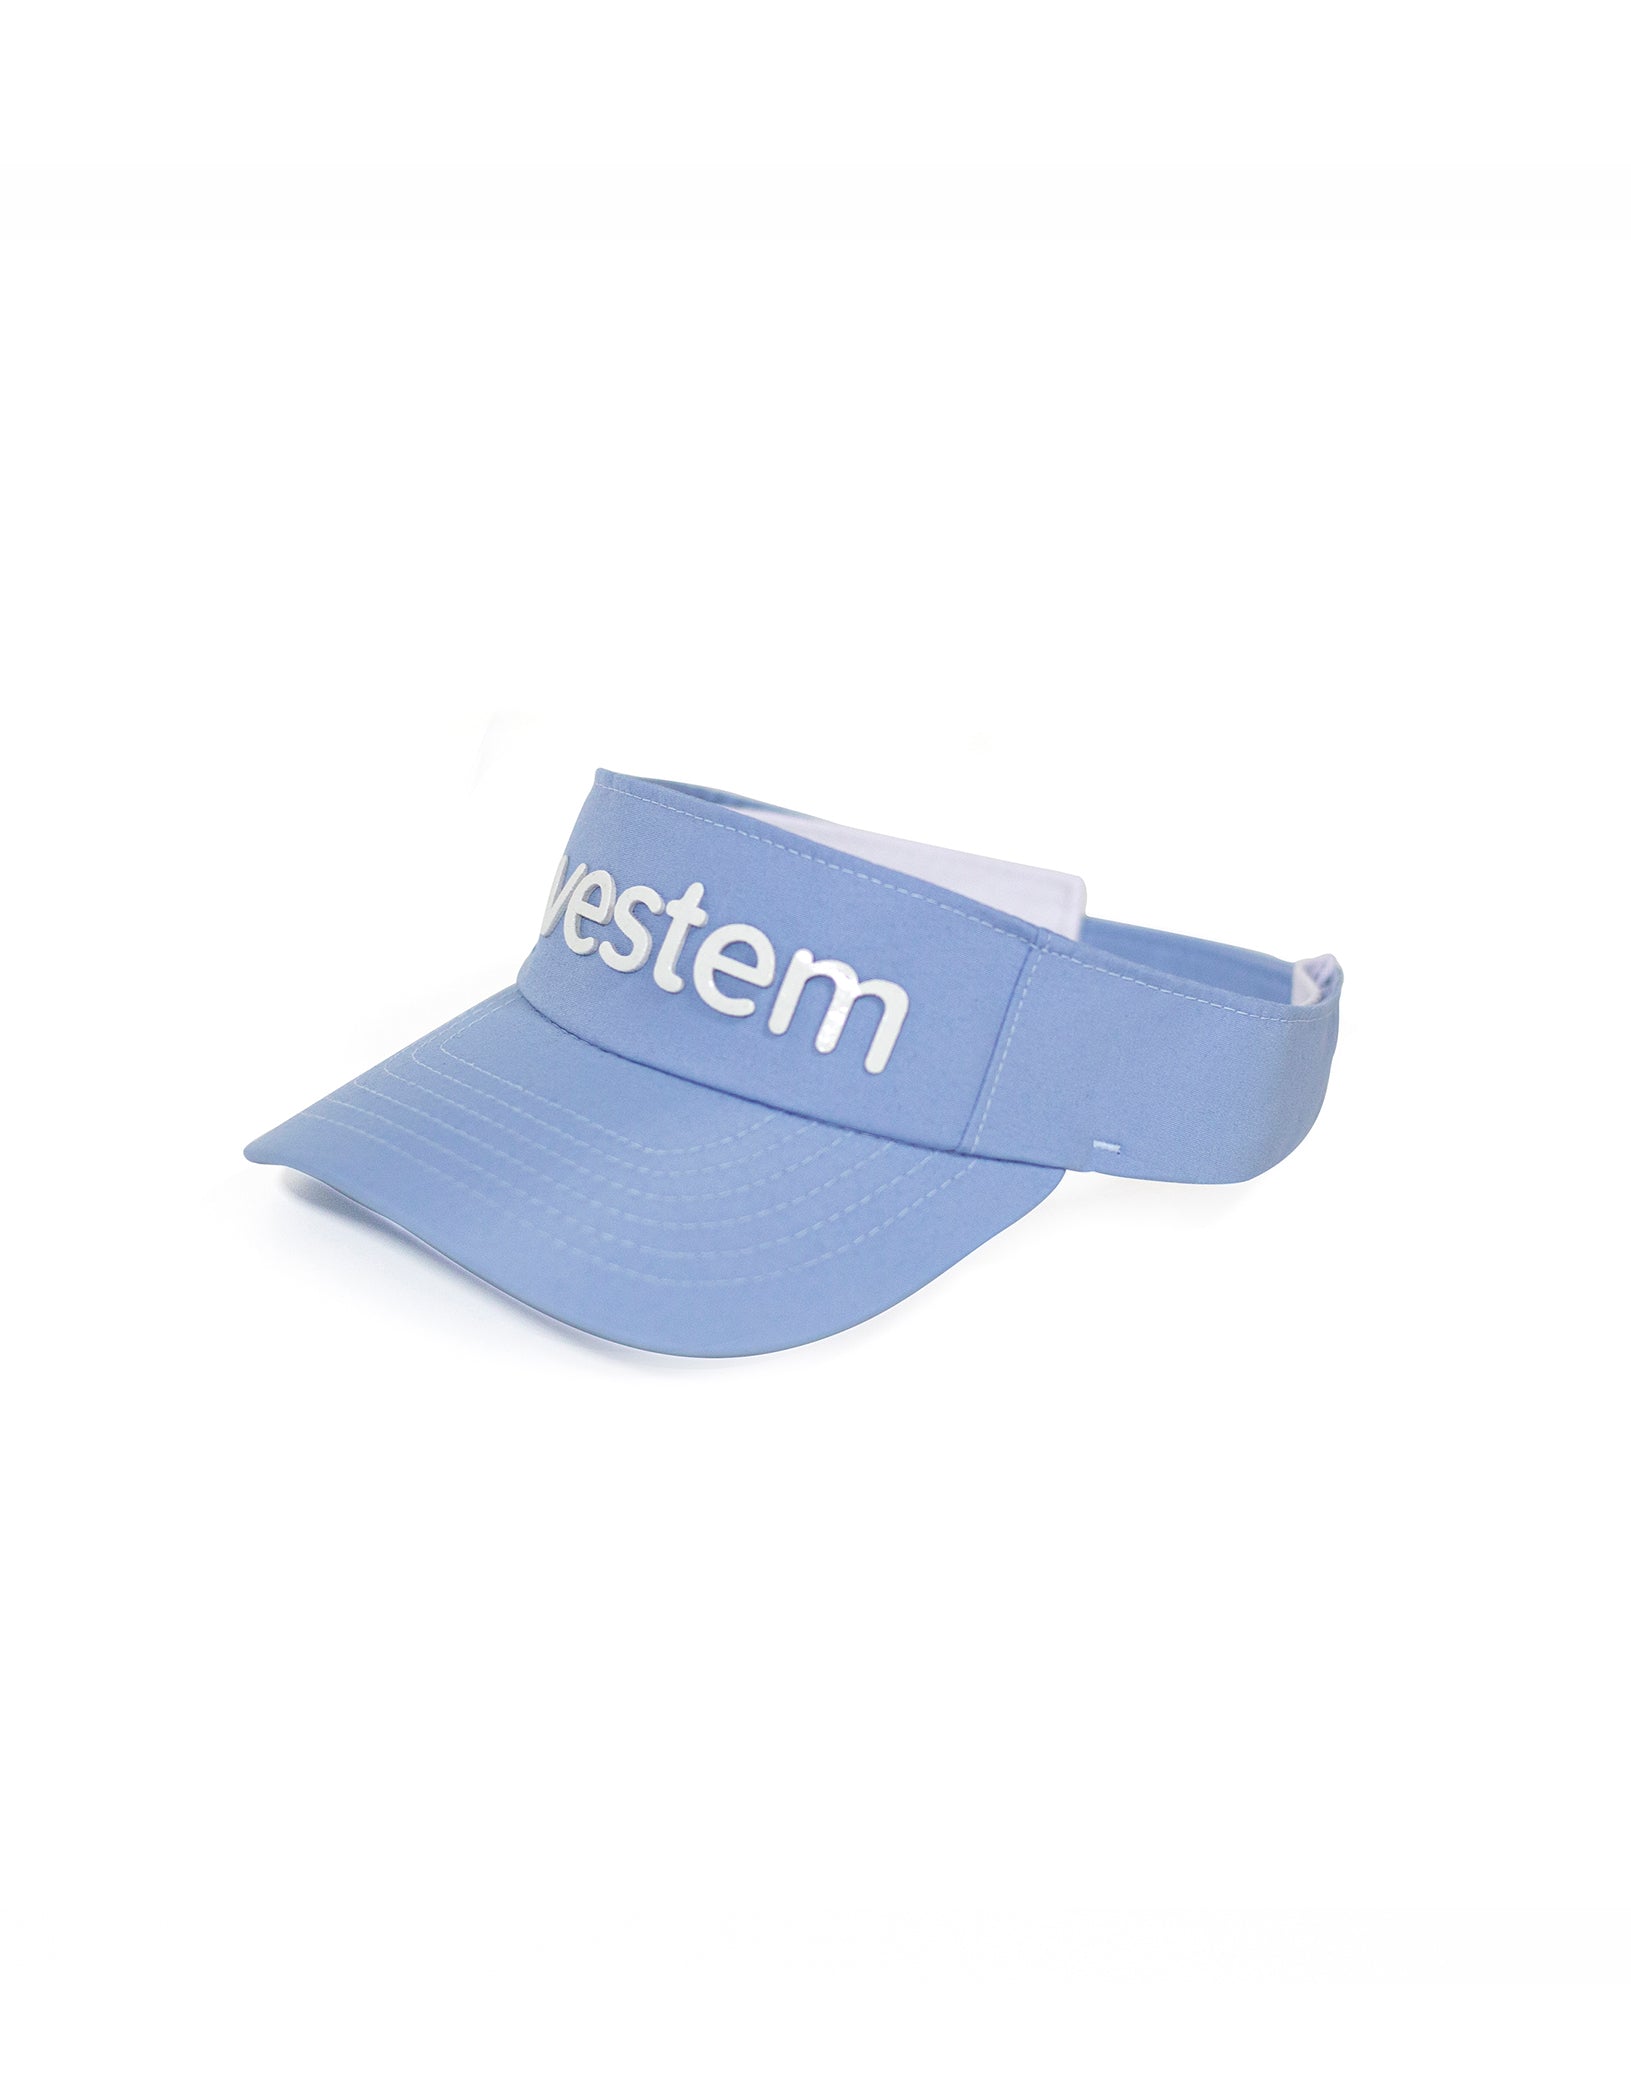 Vestem - Viewfinder Wear Blue Drizzle - VS18C0244